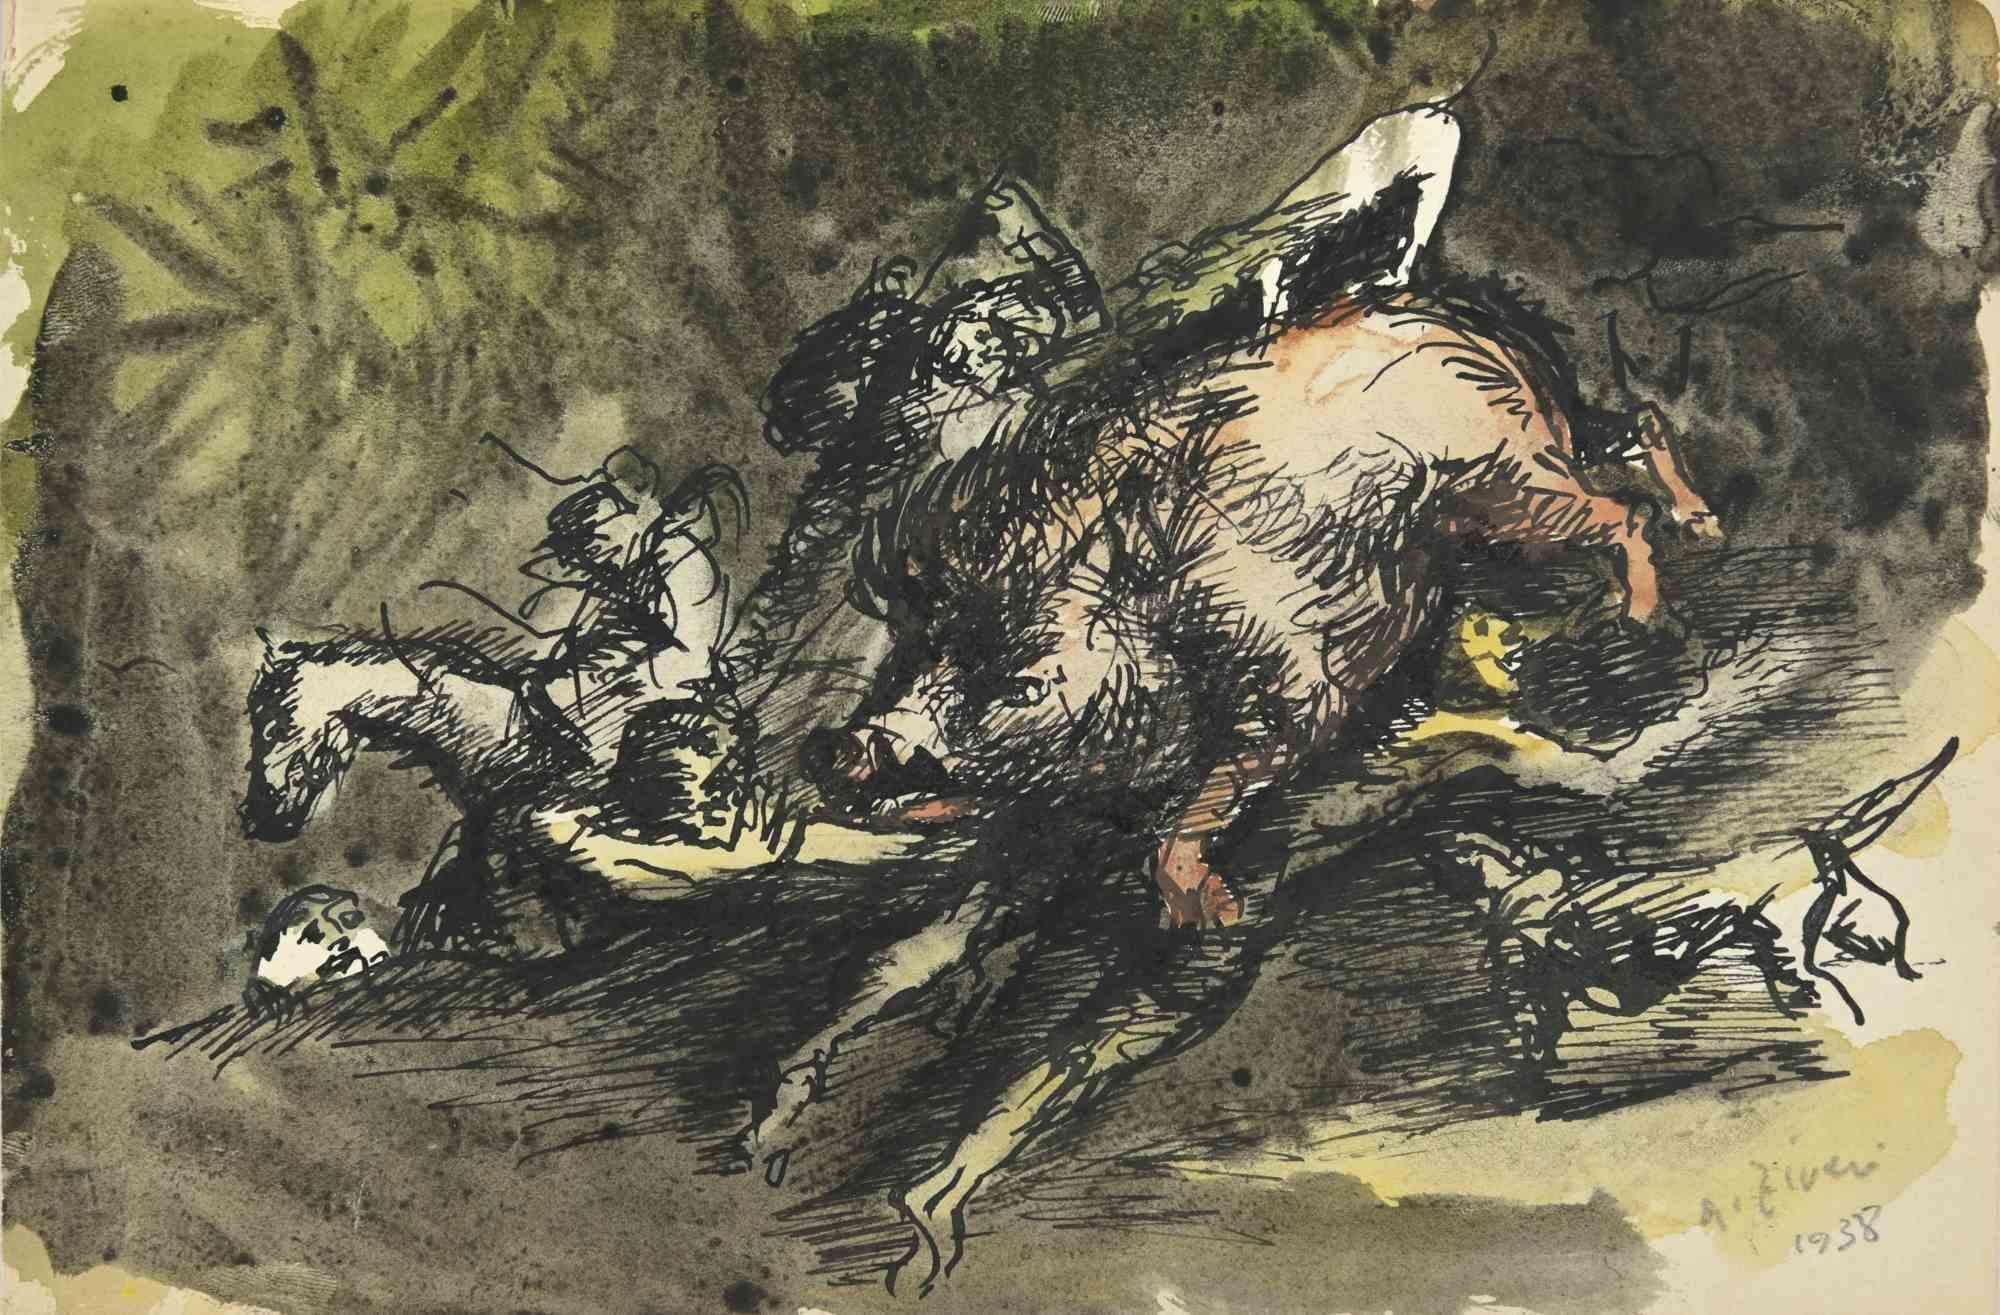 Die Jagd ist eine Zeichnung von Alberto Ziveri aus dem Jahr 1938.

Tusche und Aquarell auf Papier.

Handsigniert und datiert.

In gutem Zustand.

Das Kunstwerk wird durch geschickte Striche meisterhaft dargestellt.

Alberto Ziveri (Rom, 1908 -